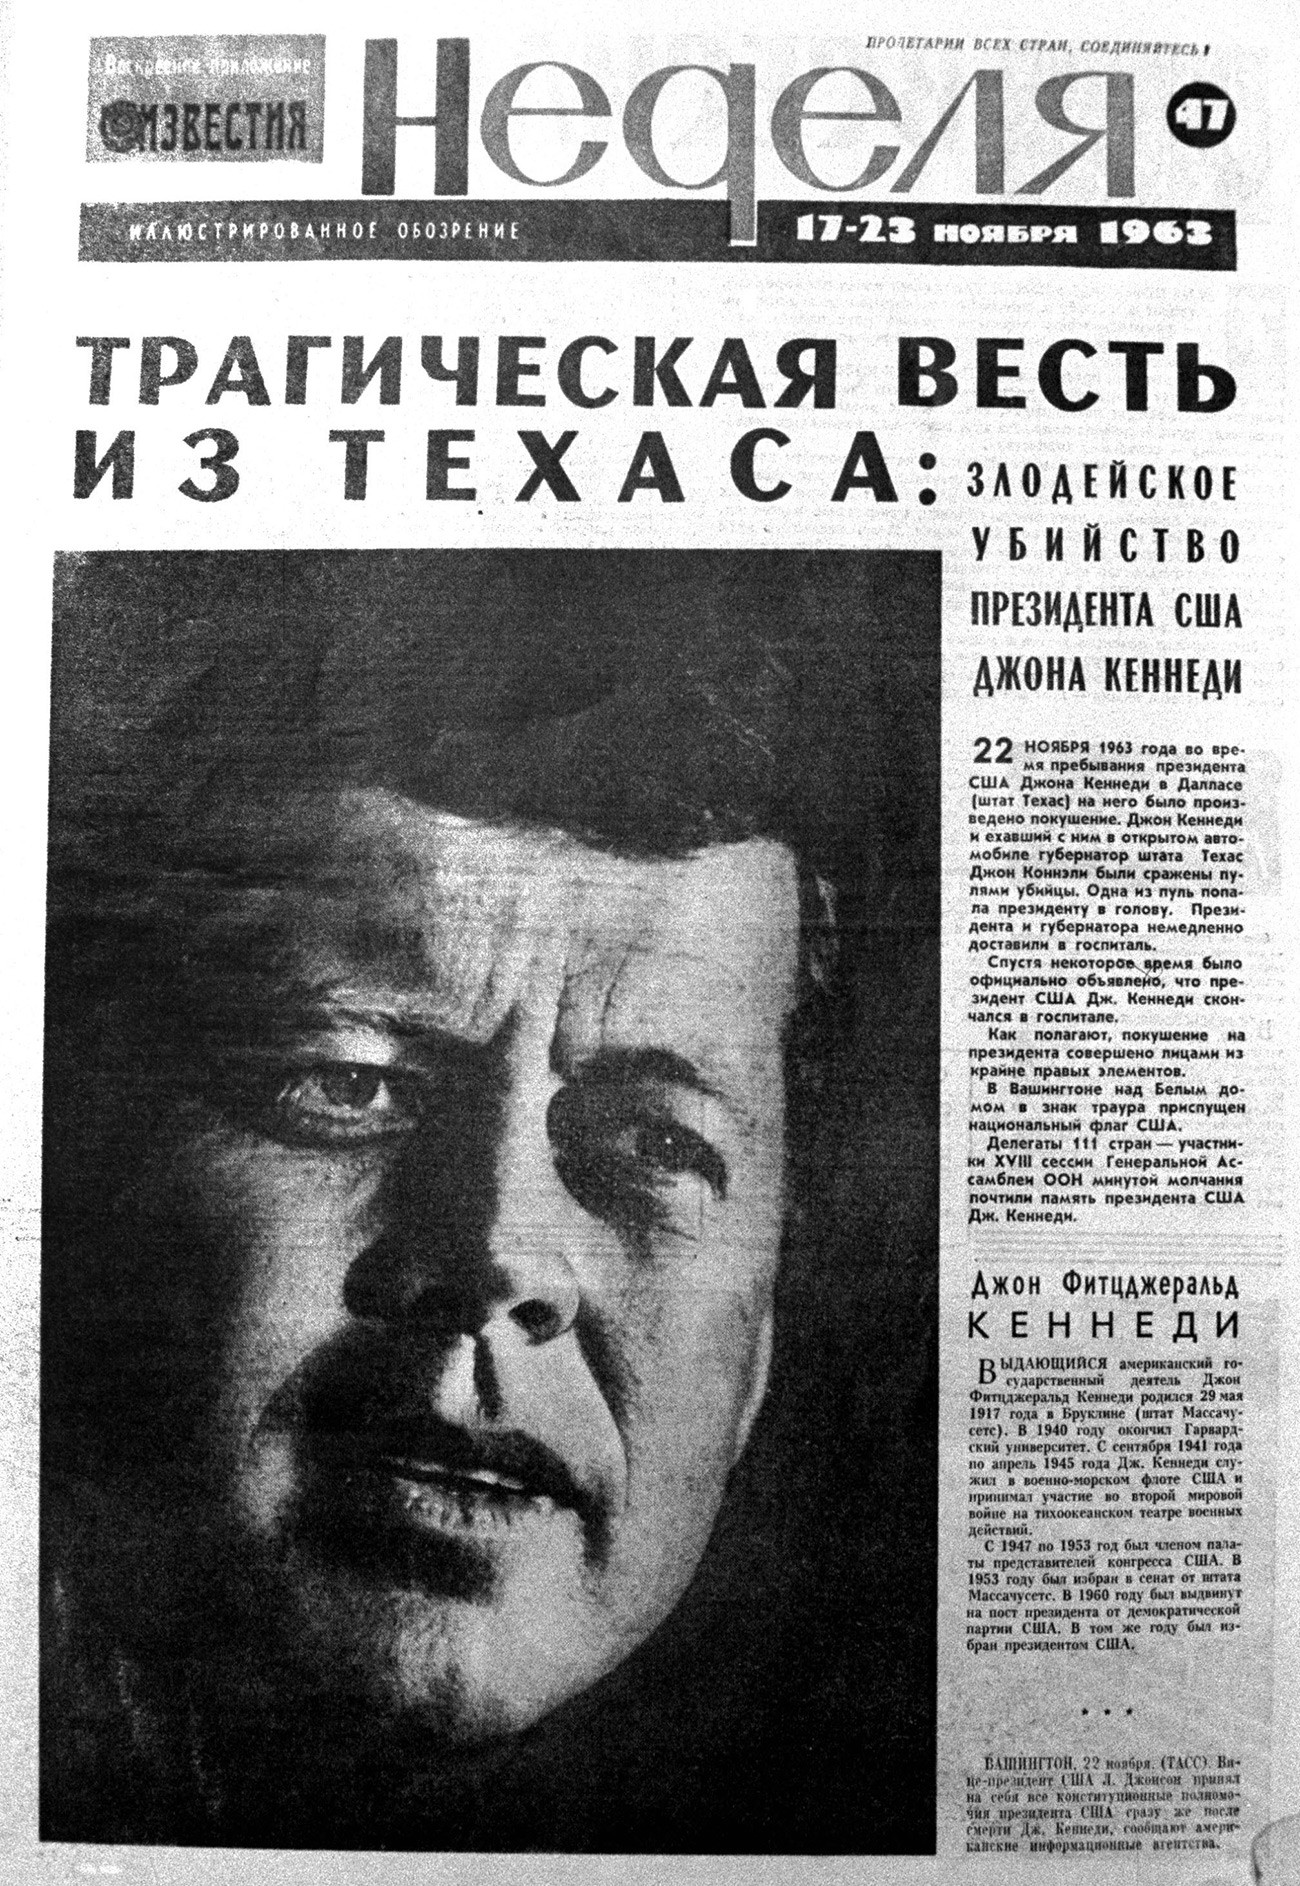 Лист „Неделя“ од 23. новембра 1963. године. Насловна страна посвећена је убиству америчког председника Џона Кенедија. „Неделя“ је био додатак уз владине новине „Известия“.